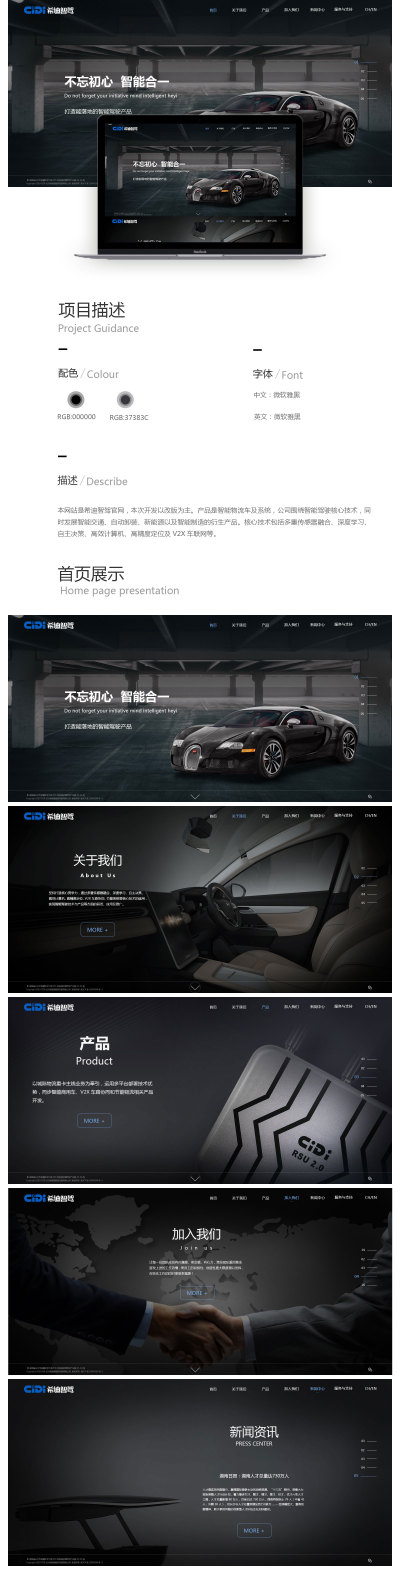 网站设计---长沙希迪智驾品牌首页